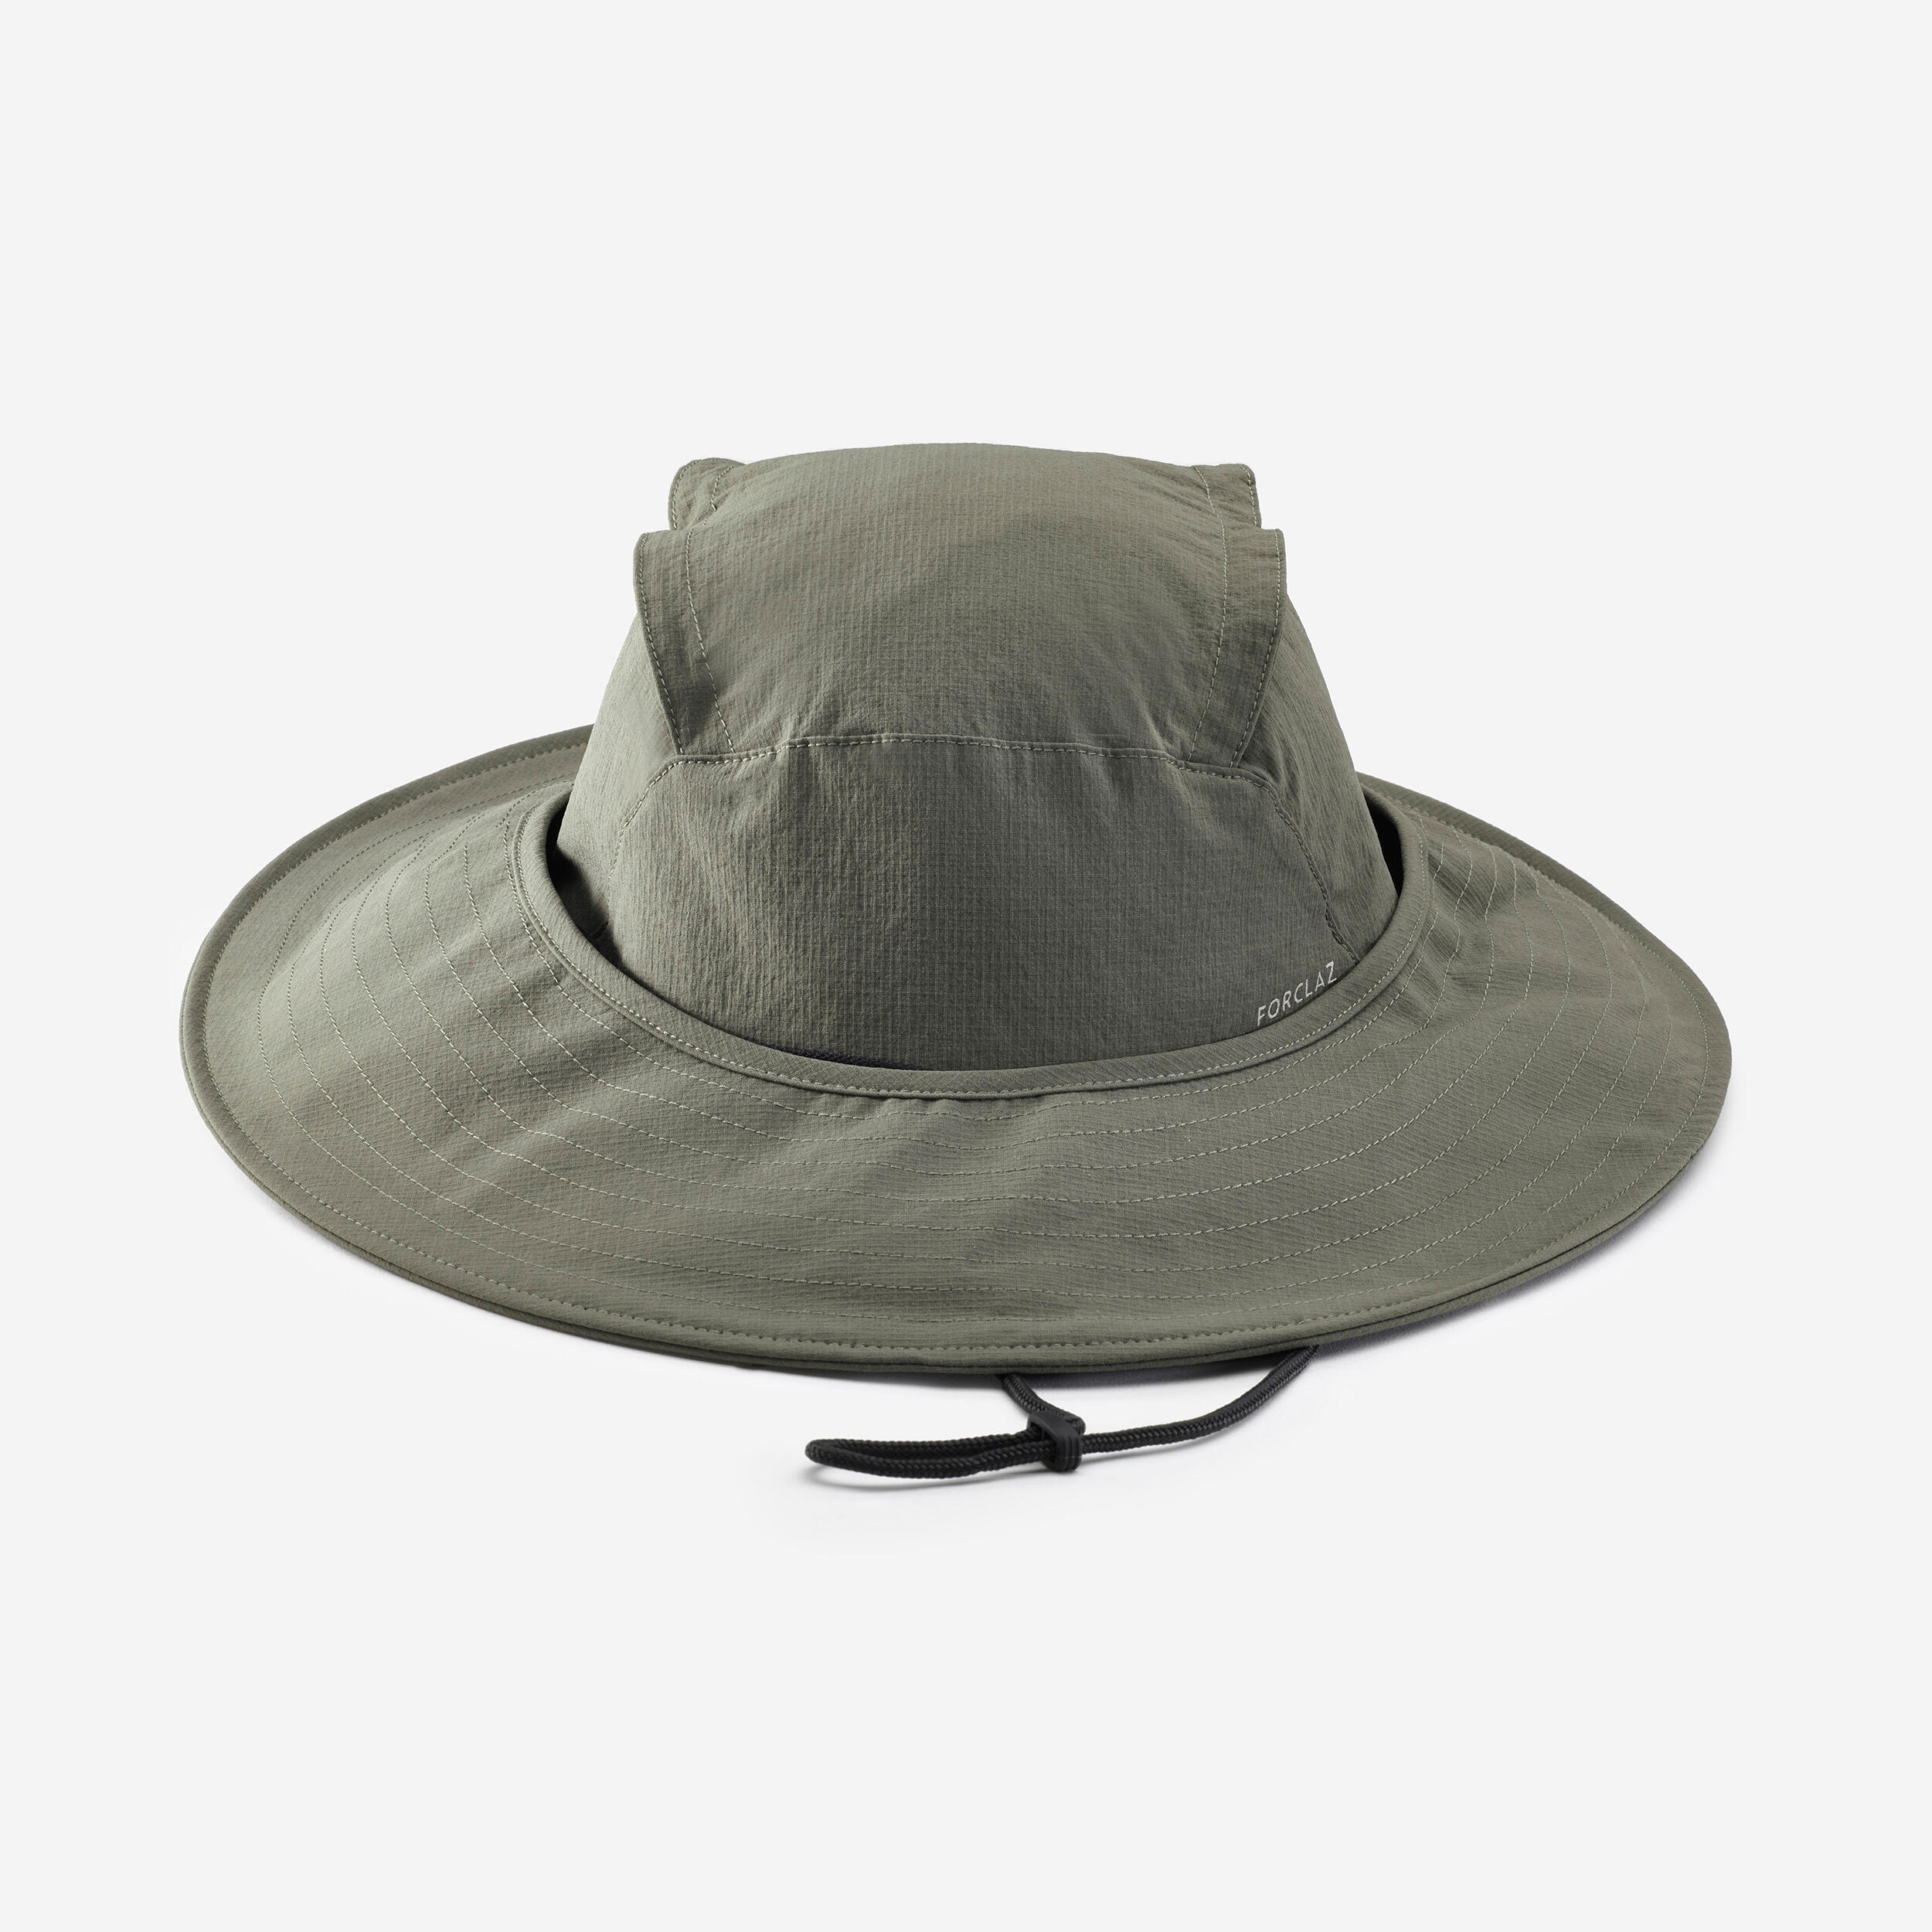 Men's Mosquito Repellent Hat - TROPIC 900 Khaki 2/5